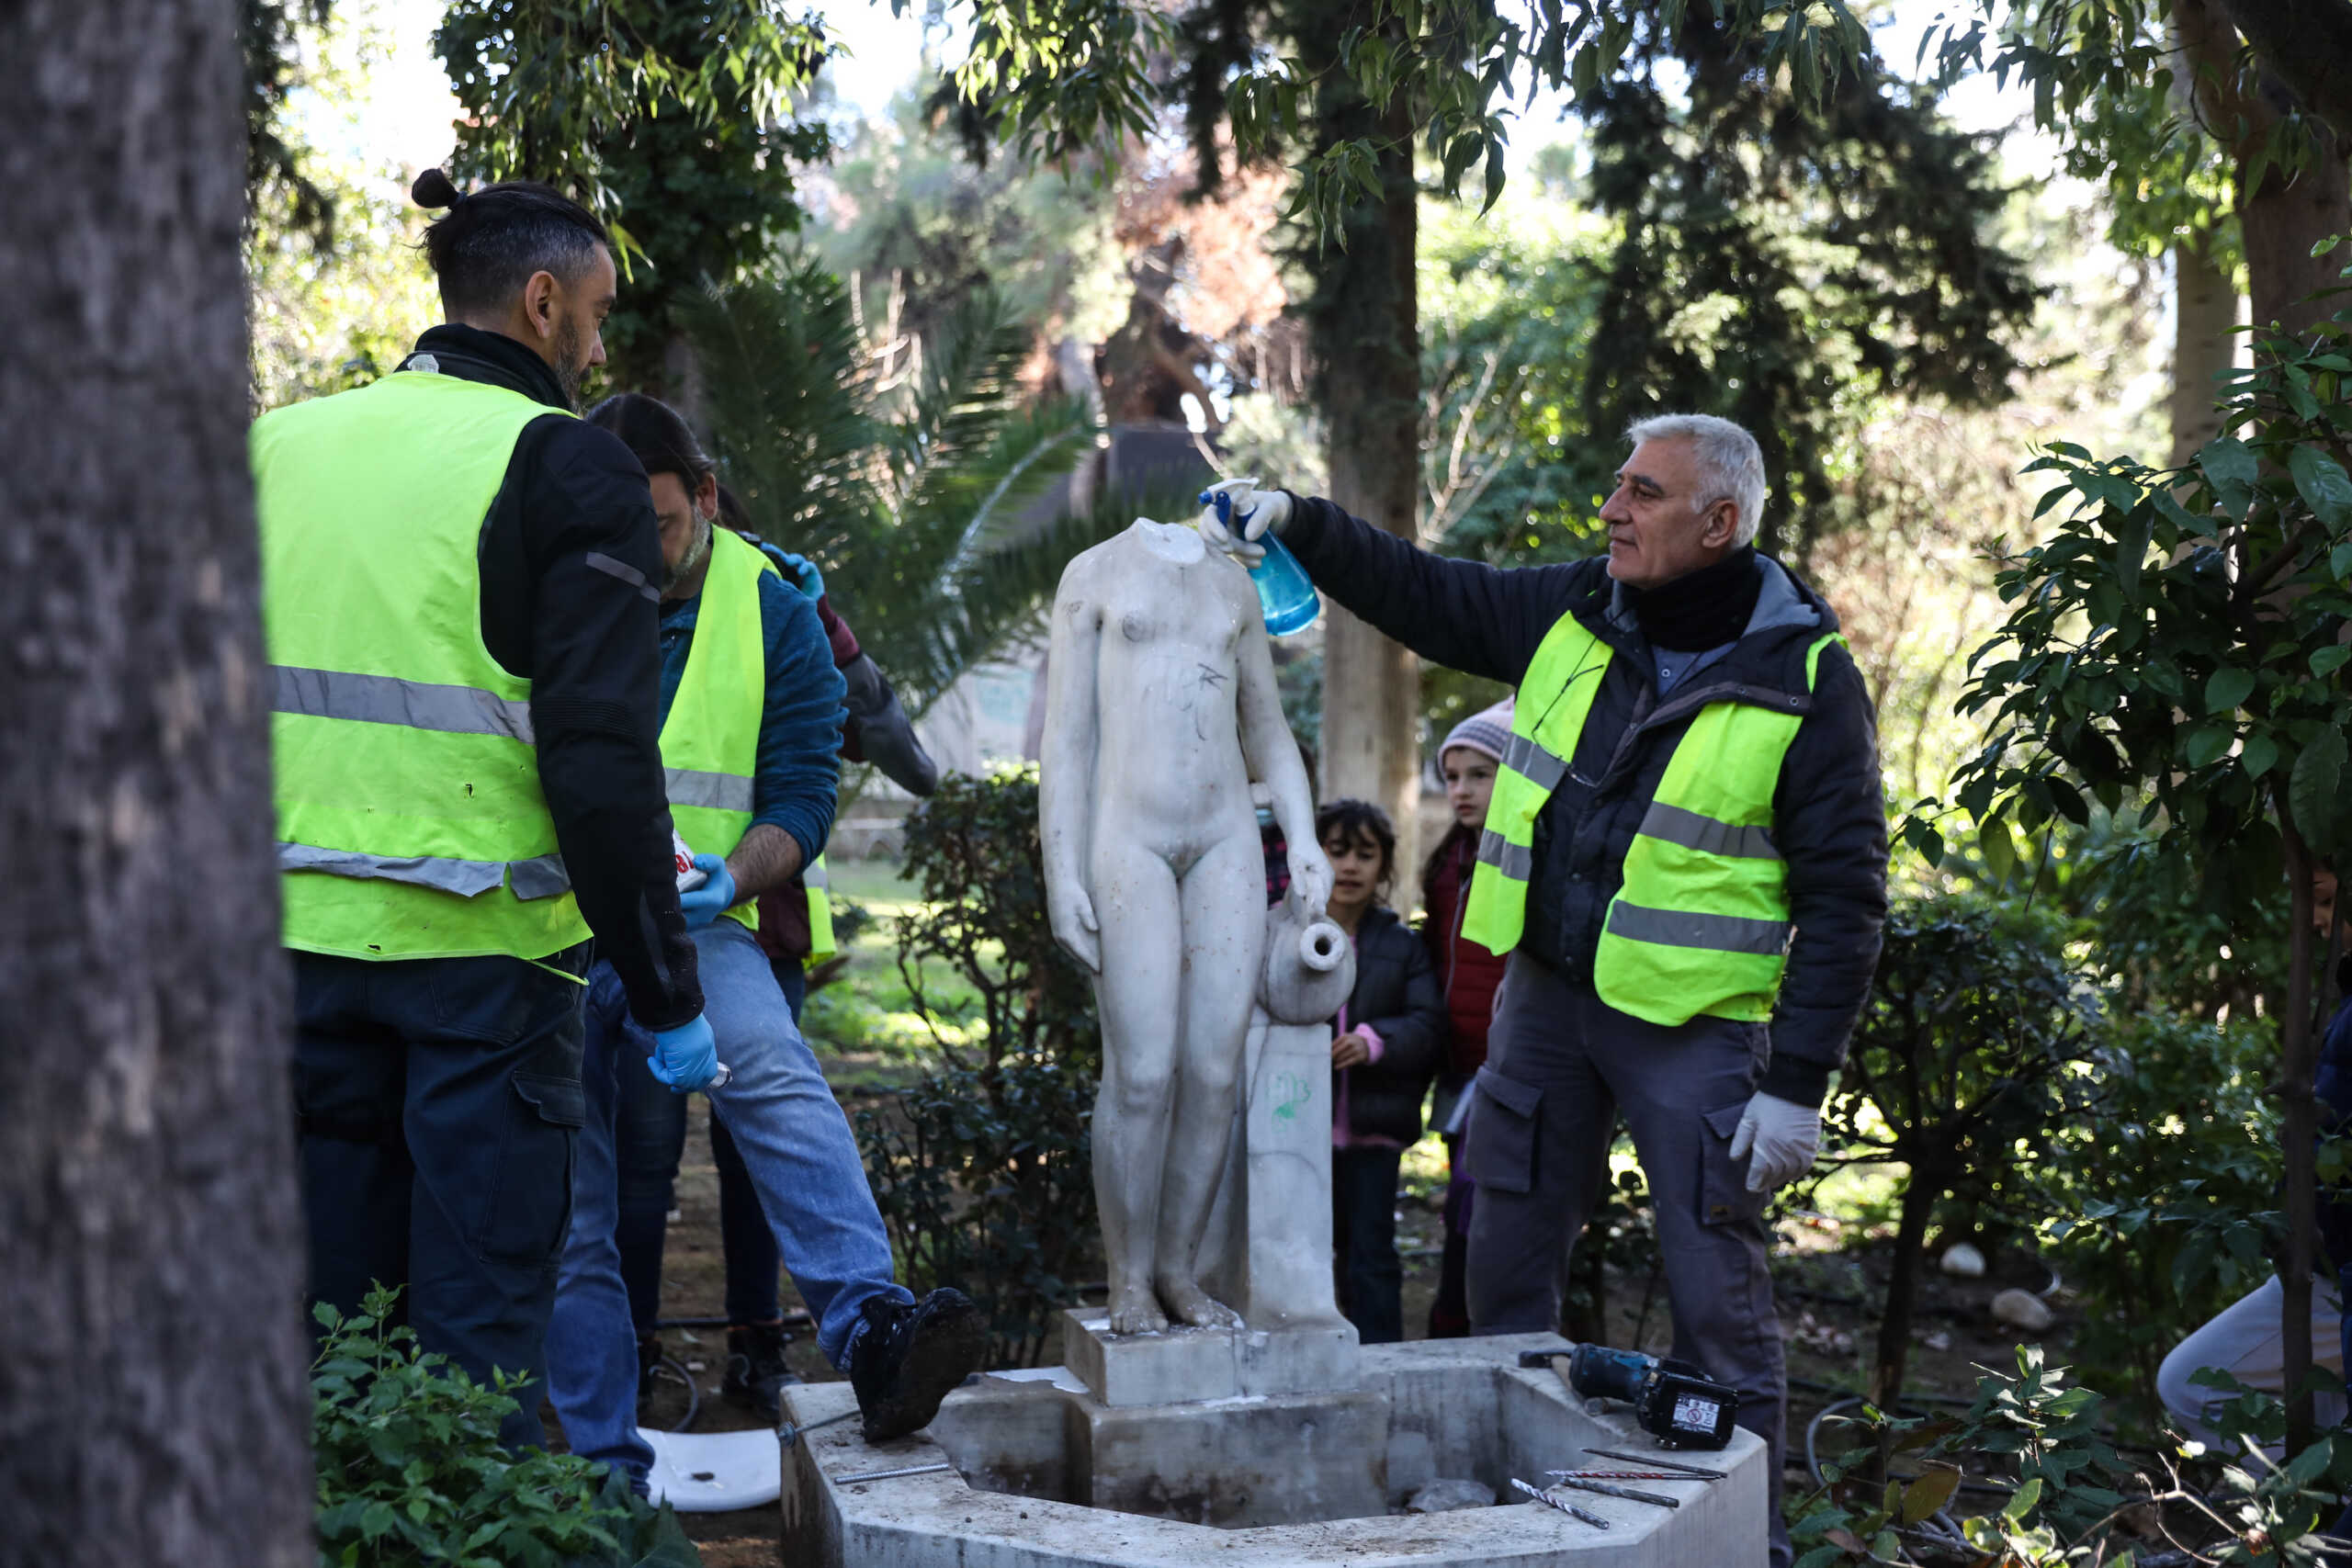 Δήμος Αθηναίων: «Ομορφαίνουν» και πάλι γλυπτά και μνημεία στο κέντρο της πόλης – Συνεχίζεται το πρόγραμμα αποκατάστασης